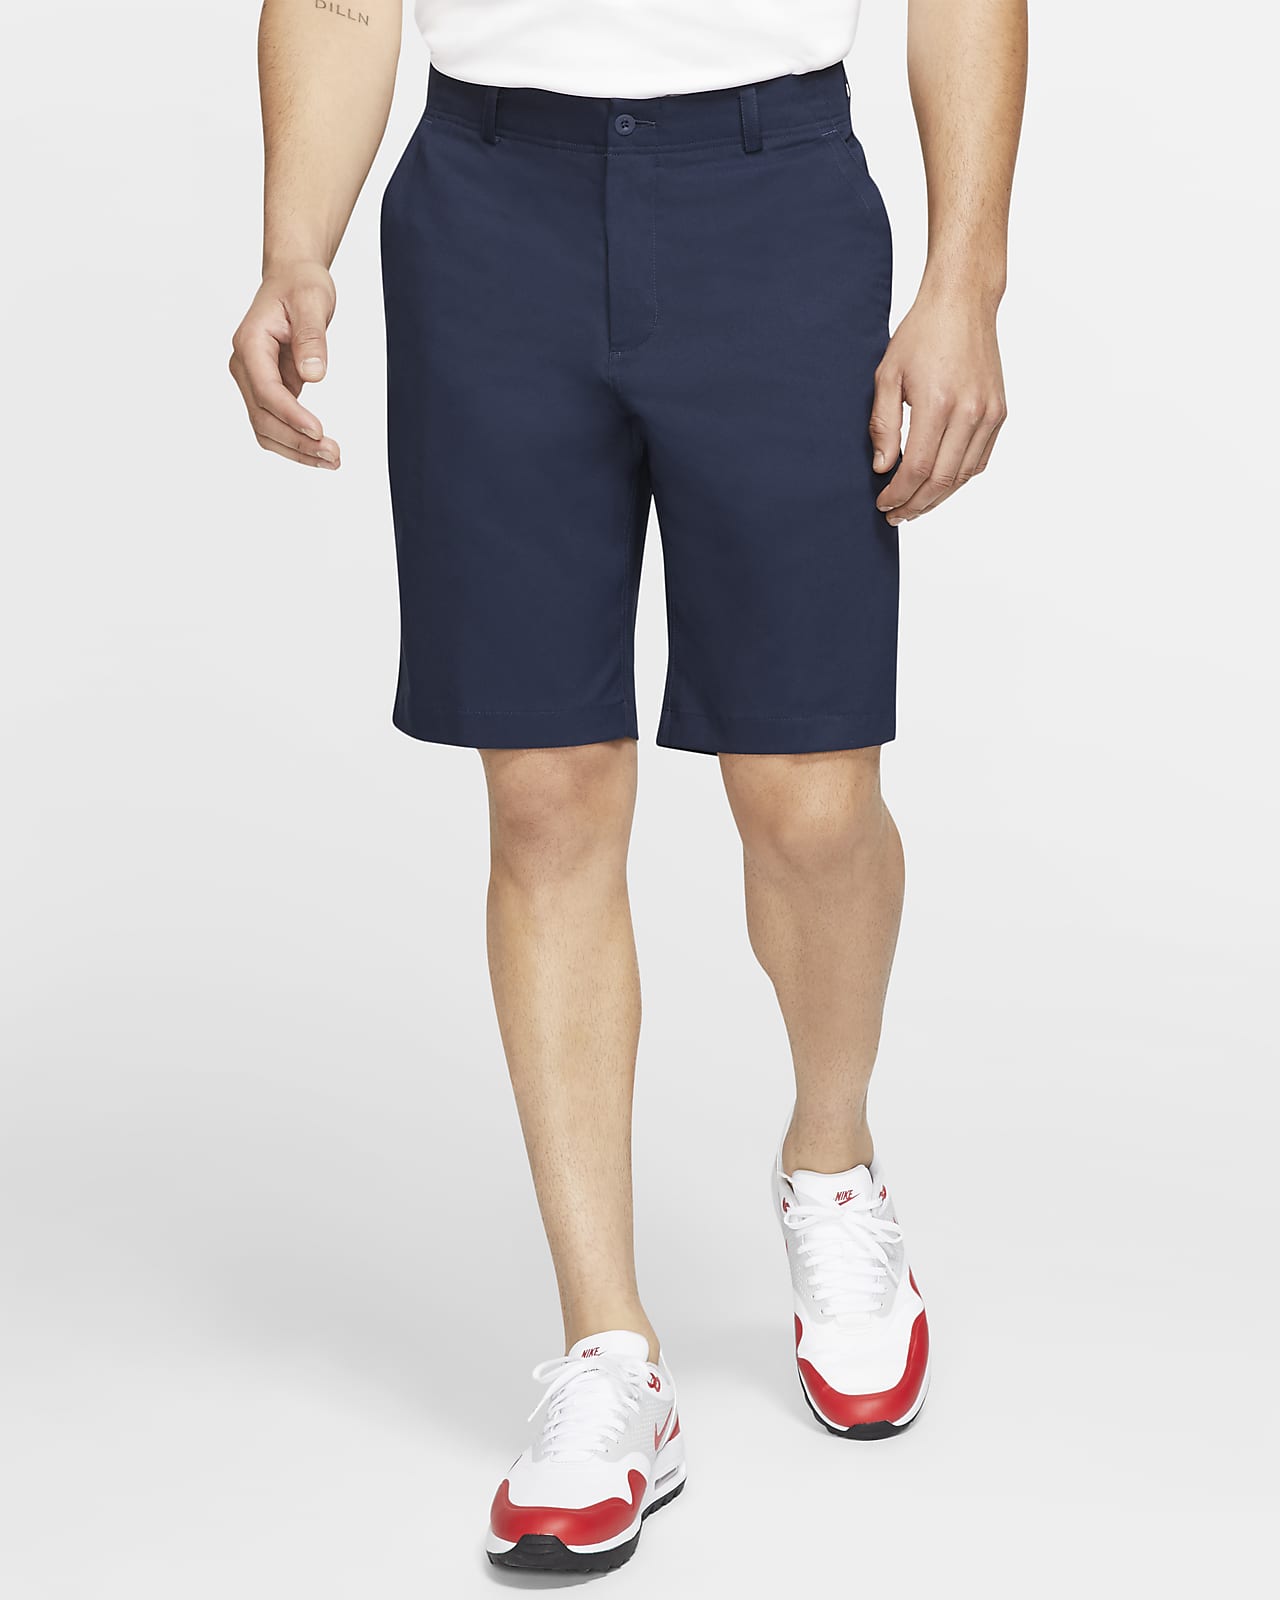 Circo brillo Respetuoso del medio ambiente Nike Flex Essential Pantalón corto de golf - Hombre. Nike ES